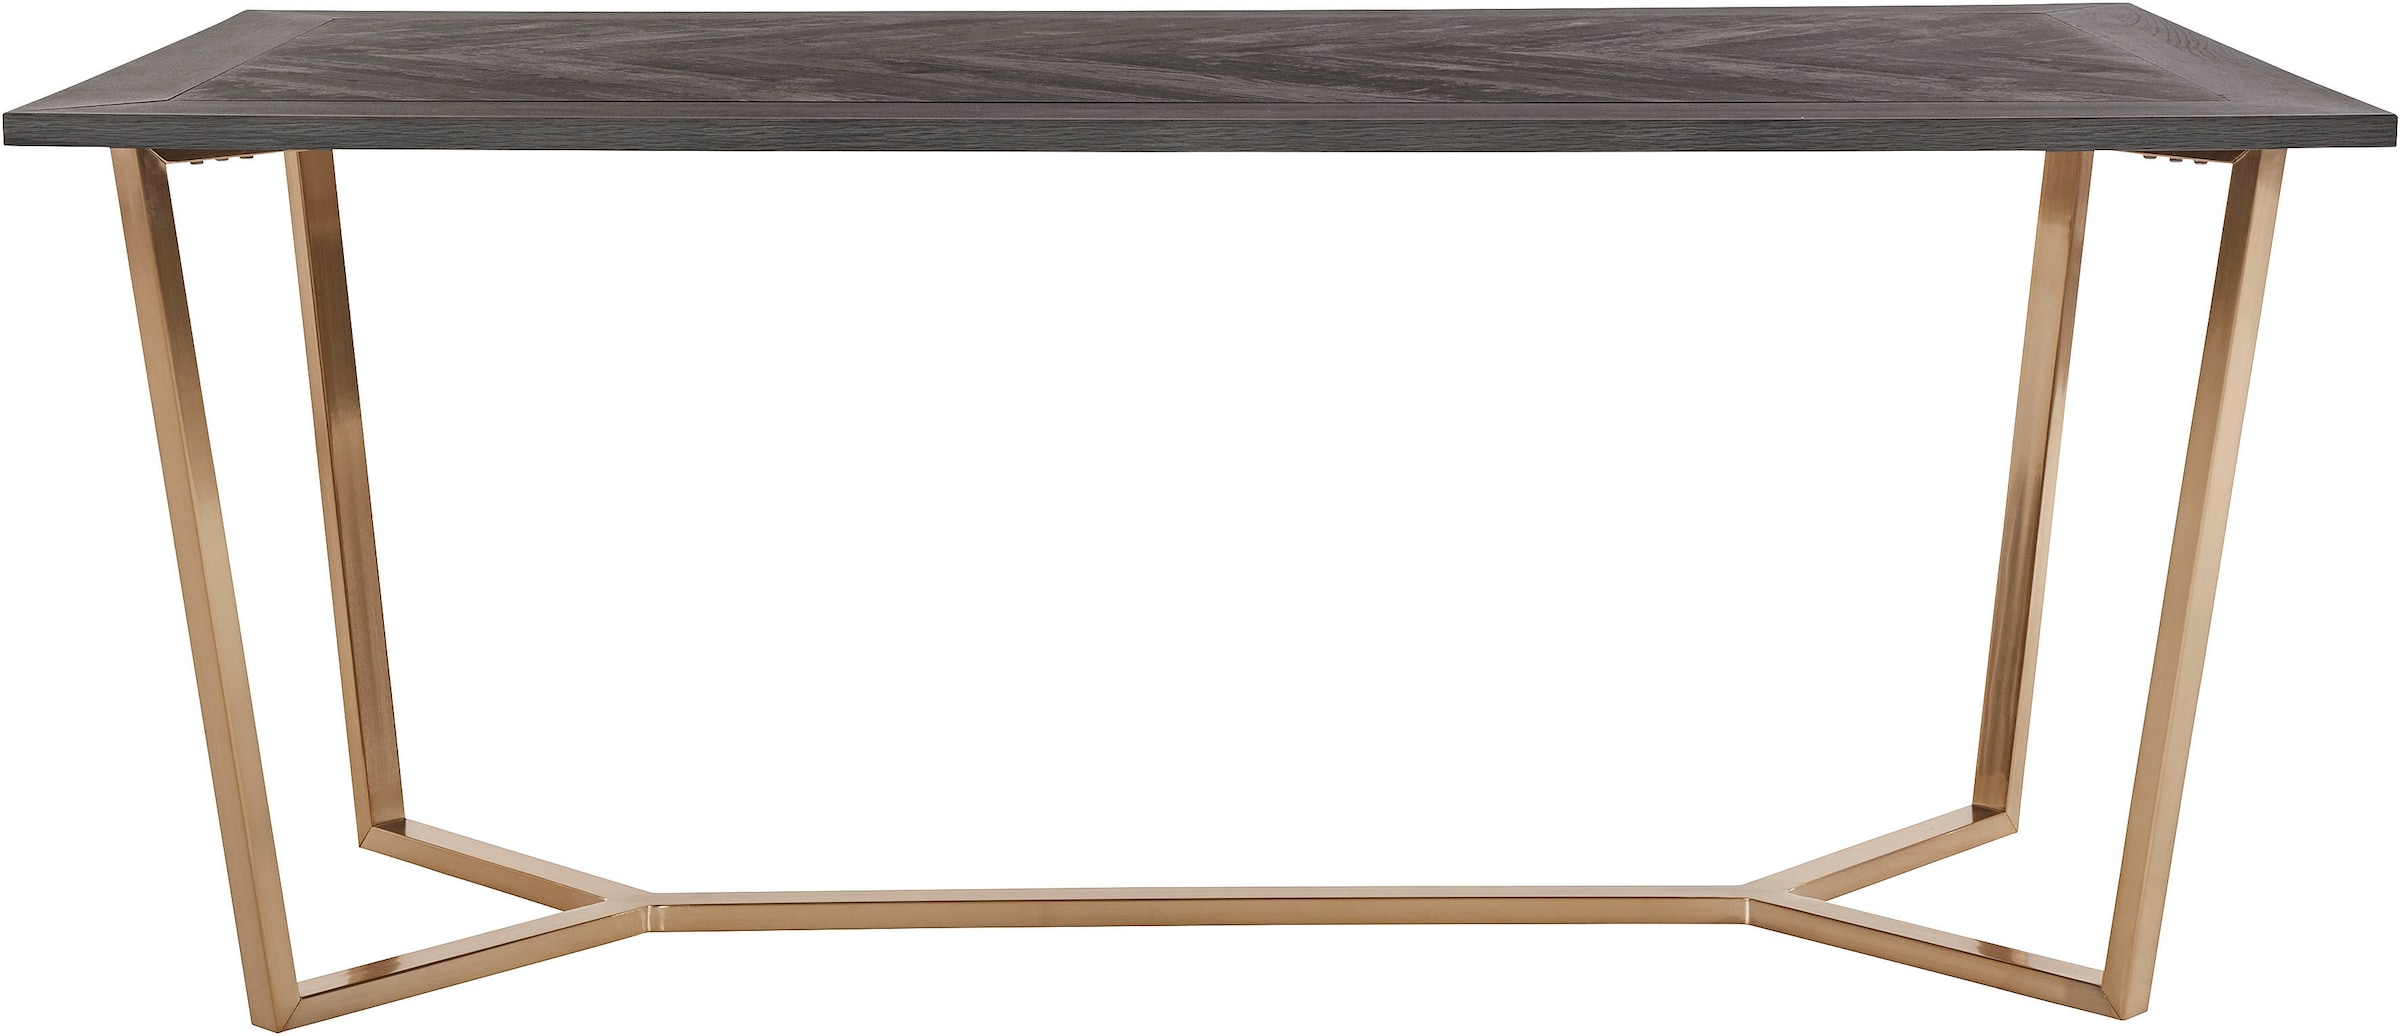 Leonique Esstisch »Nanterie«, Tischplatte in Holzoptik, mit exklusivem Fischgrätenmuster, Höhe 76 cm